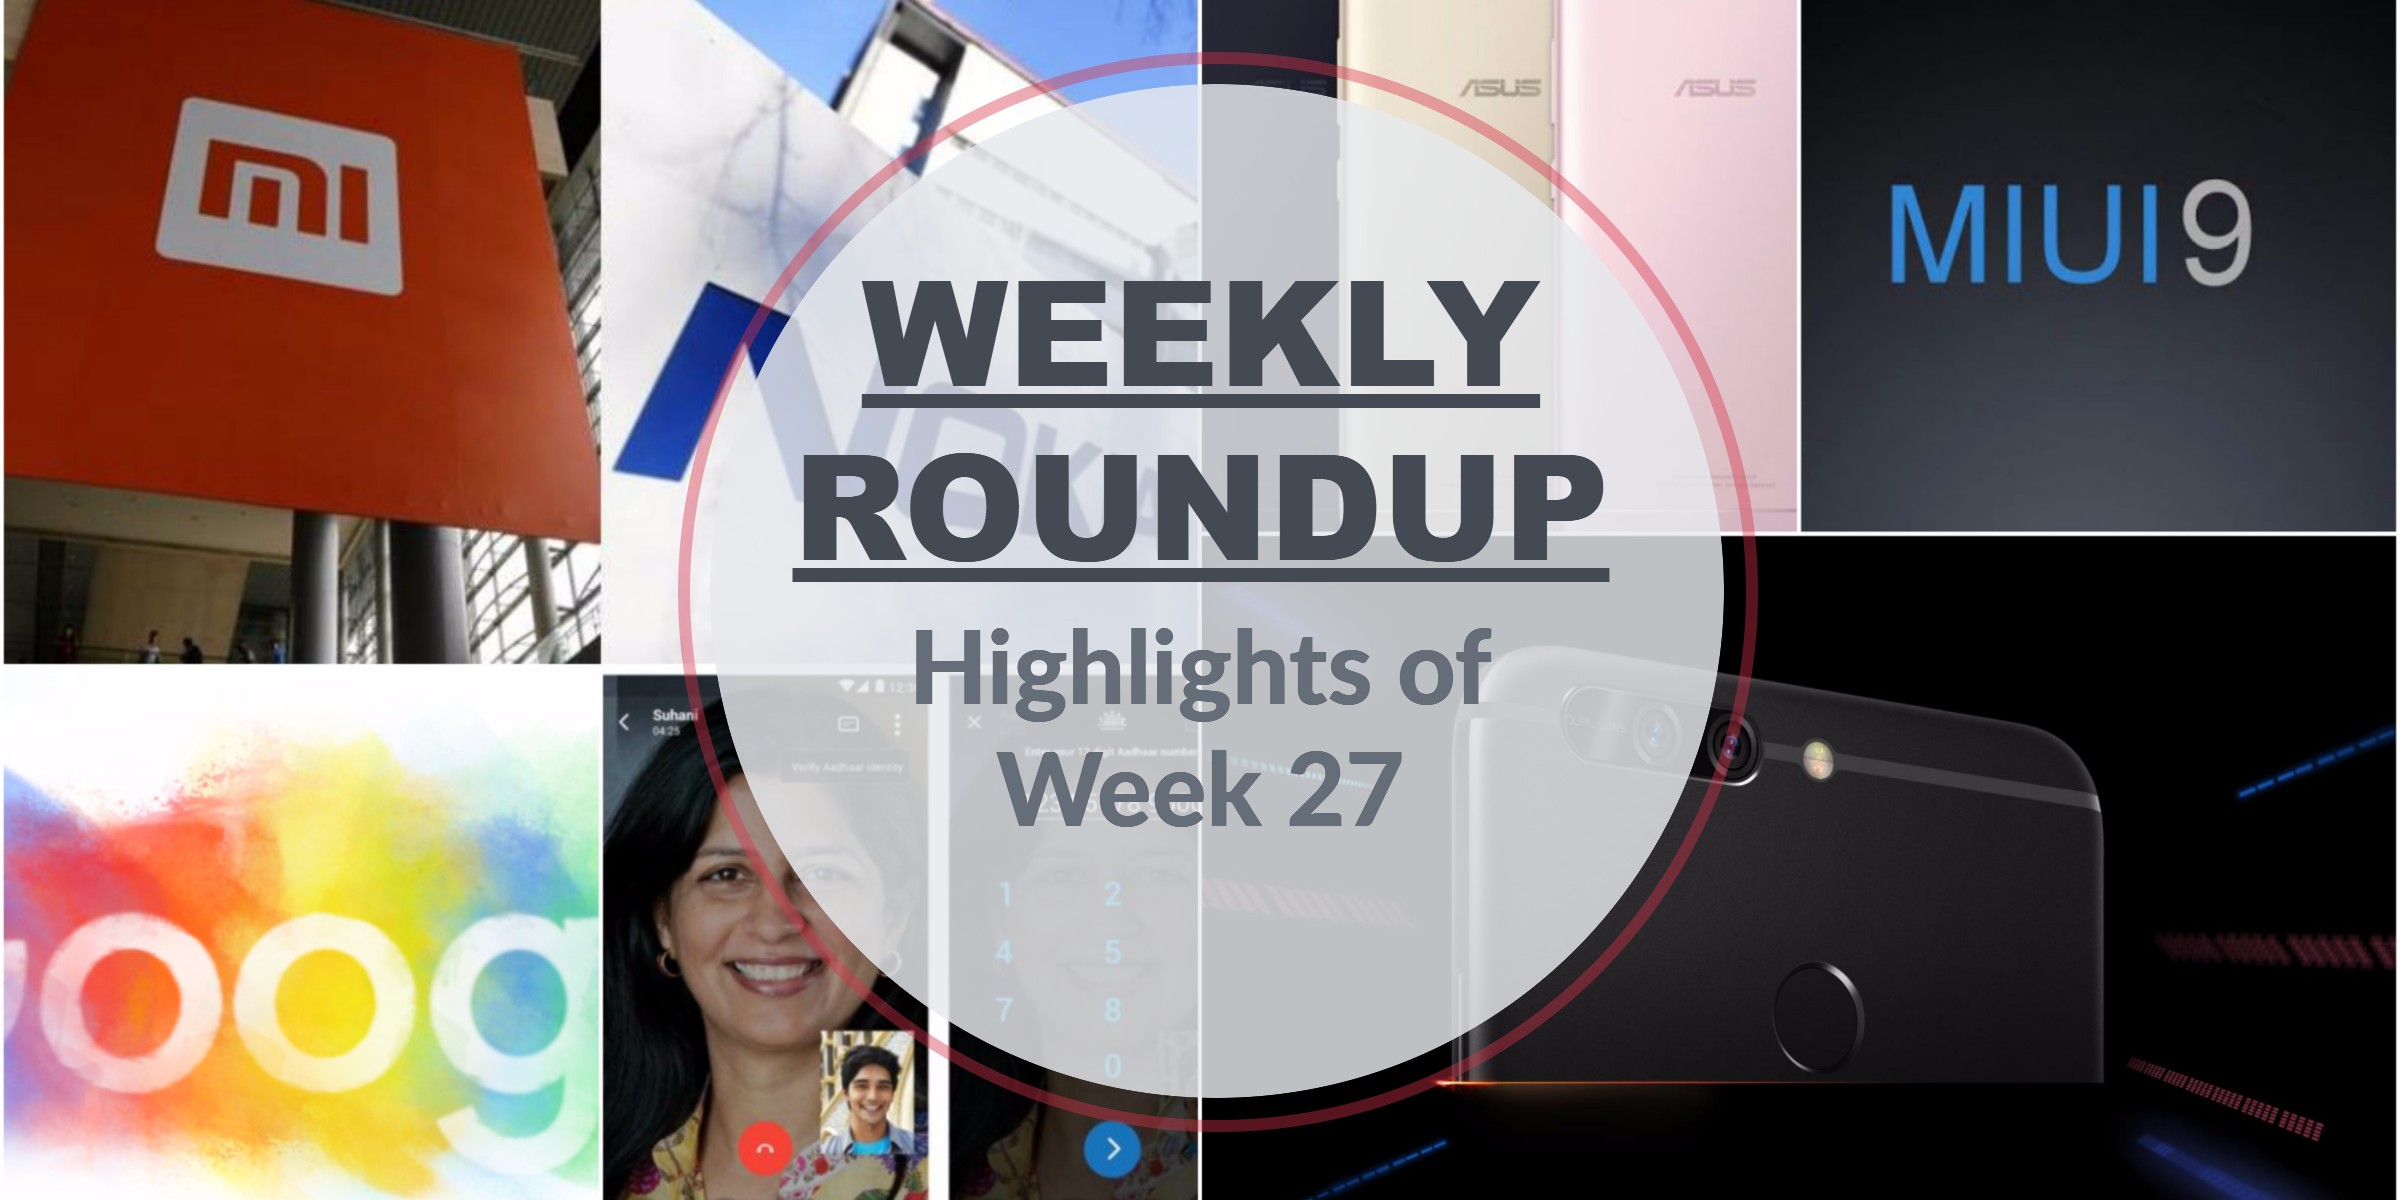 Weekly roundup: highlights of Week 27 8